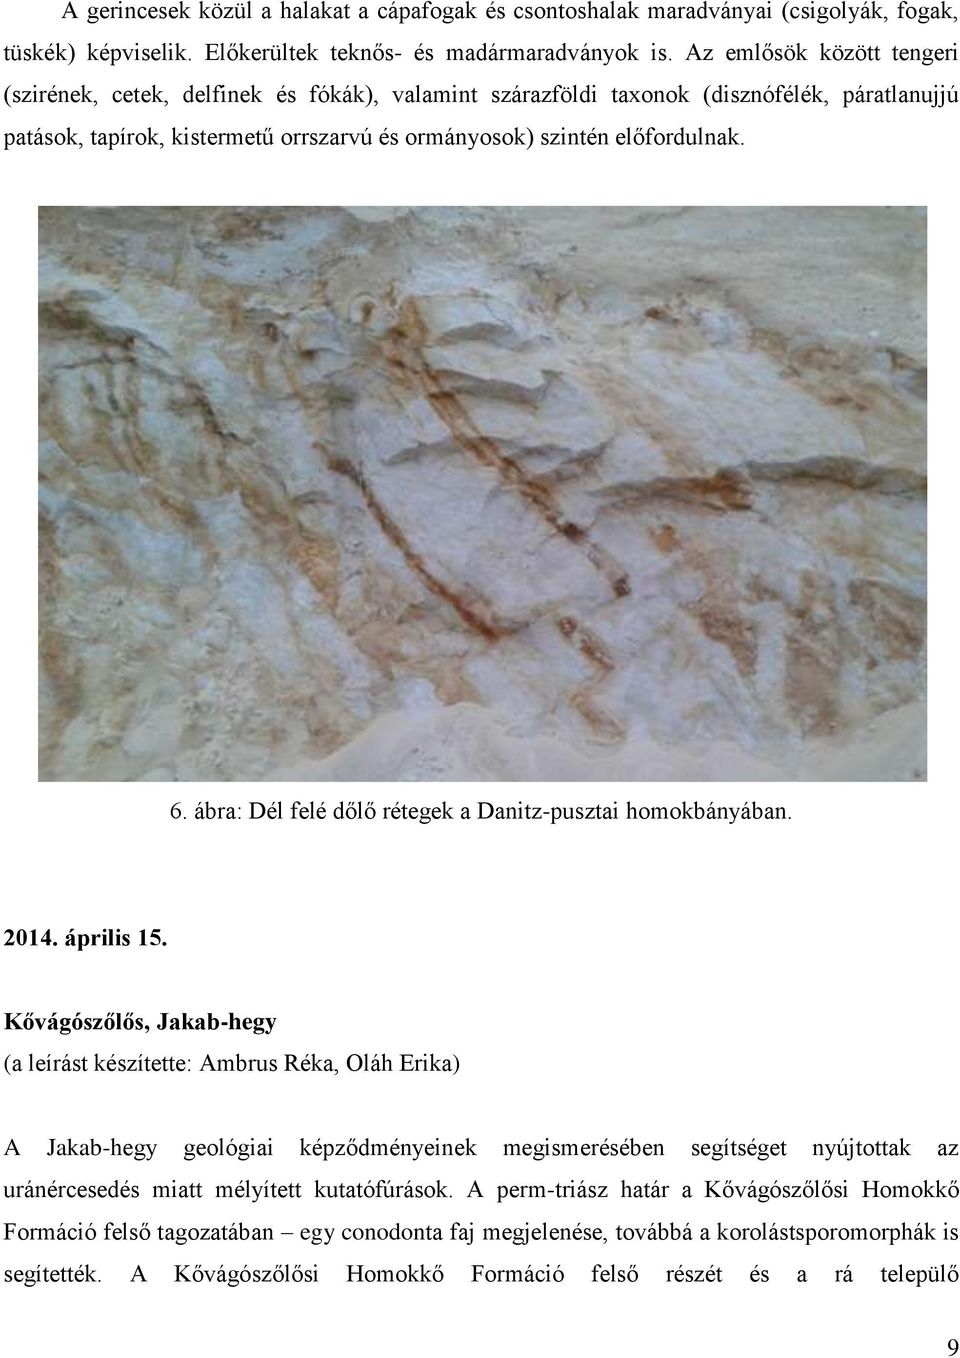 ábra: Dél felé dőlő rétegek a Danitz-pusztai homokbányában. 2014. április 15.